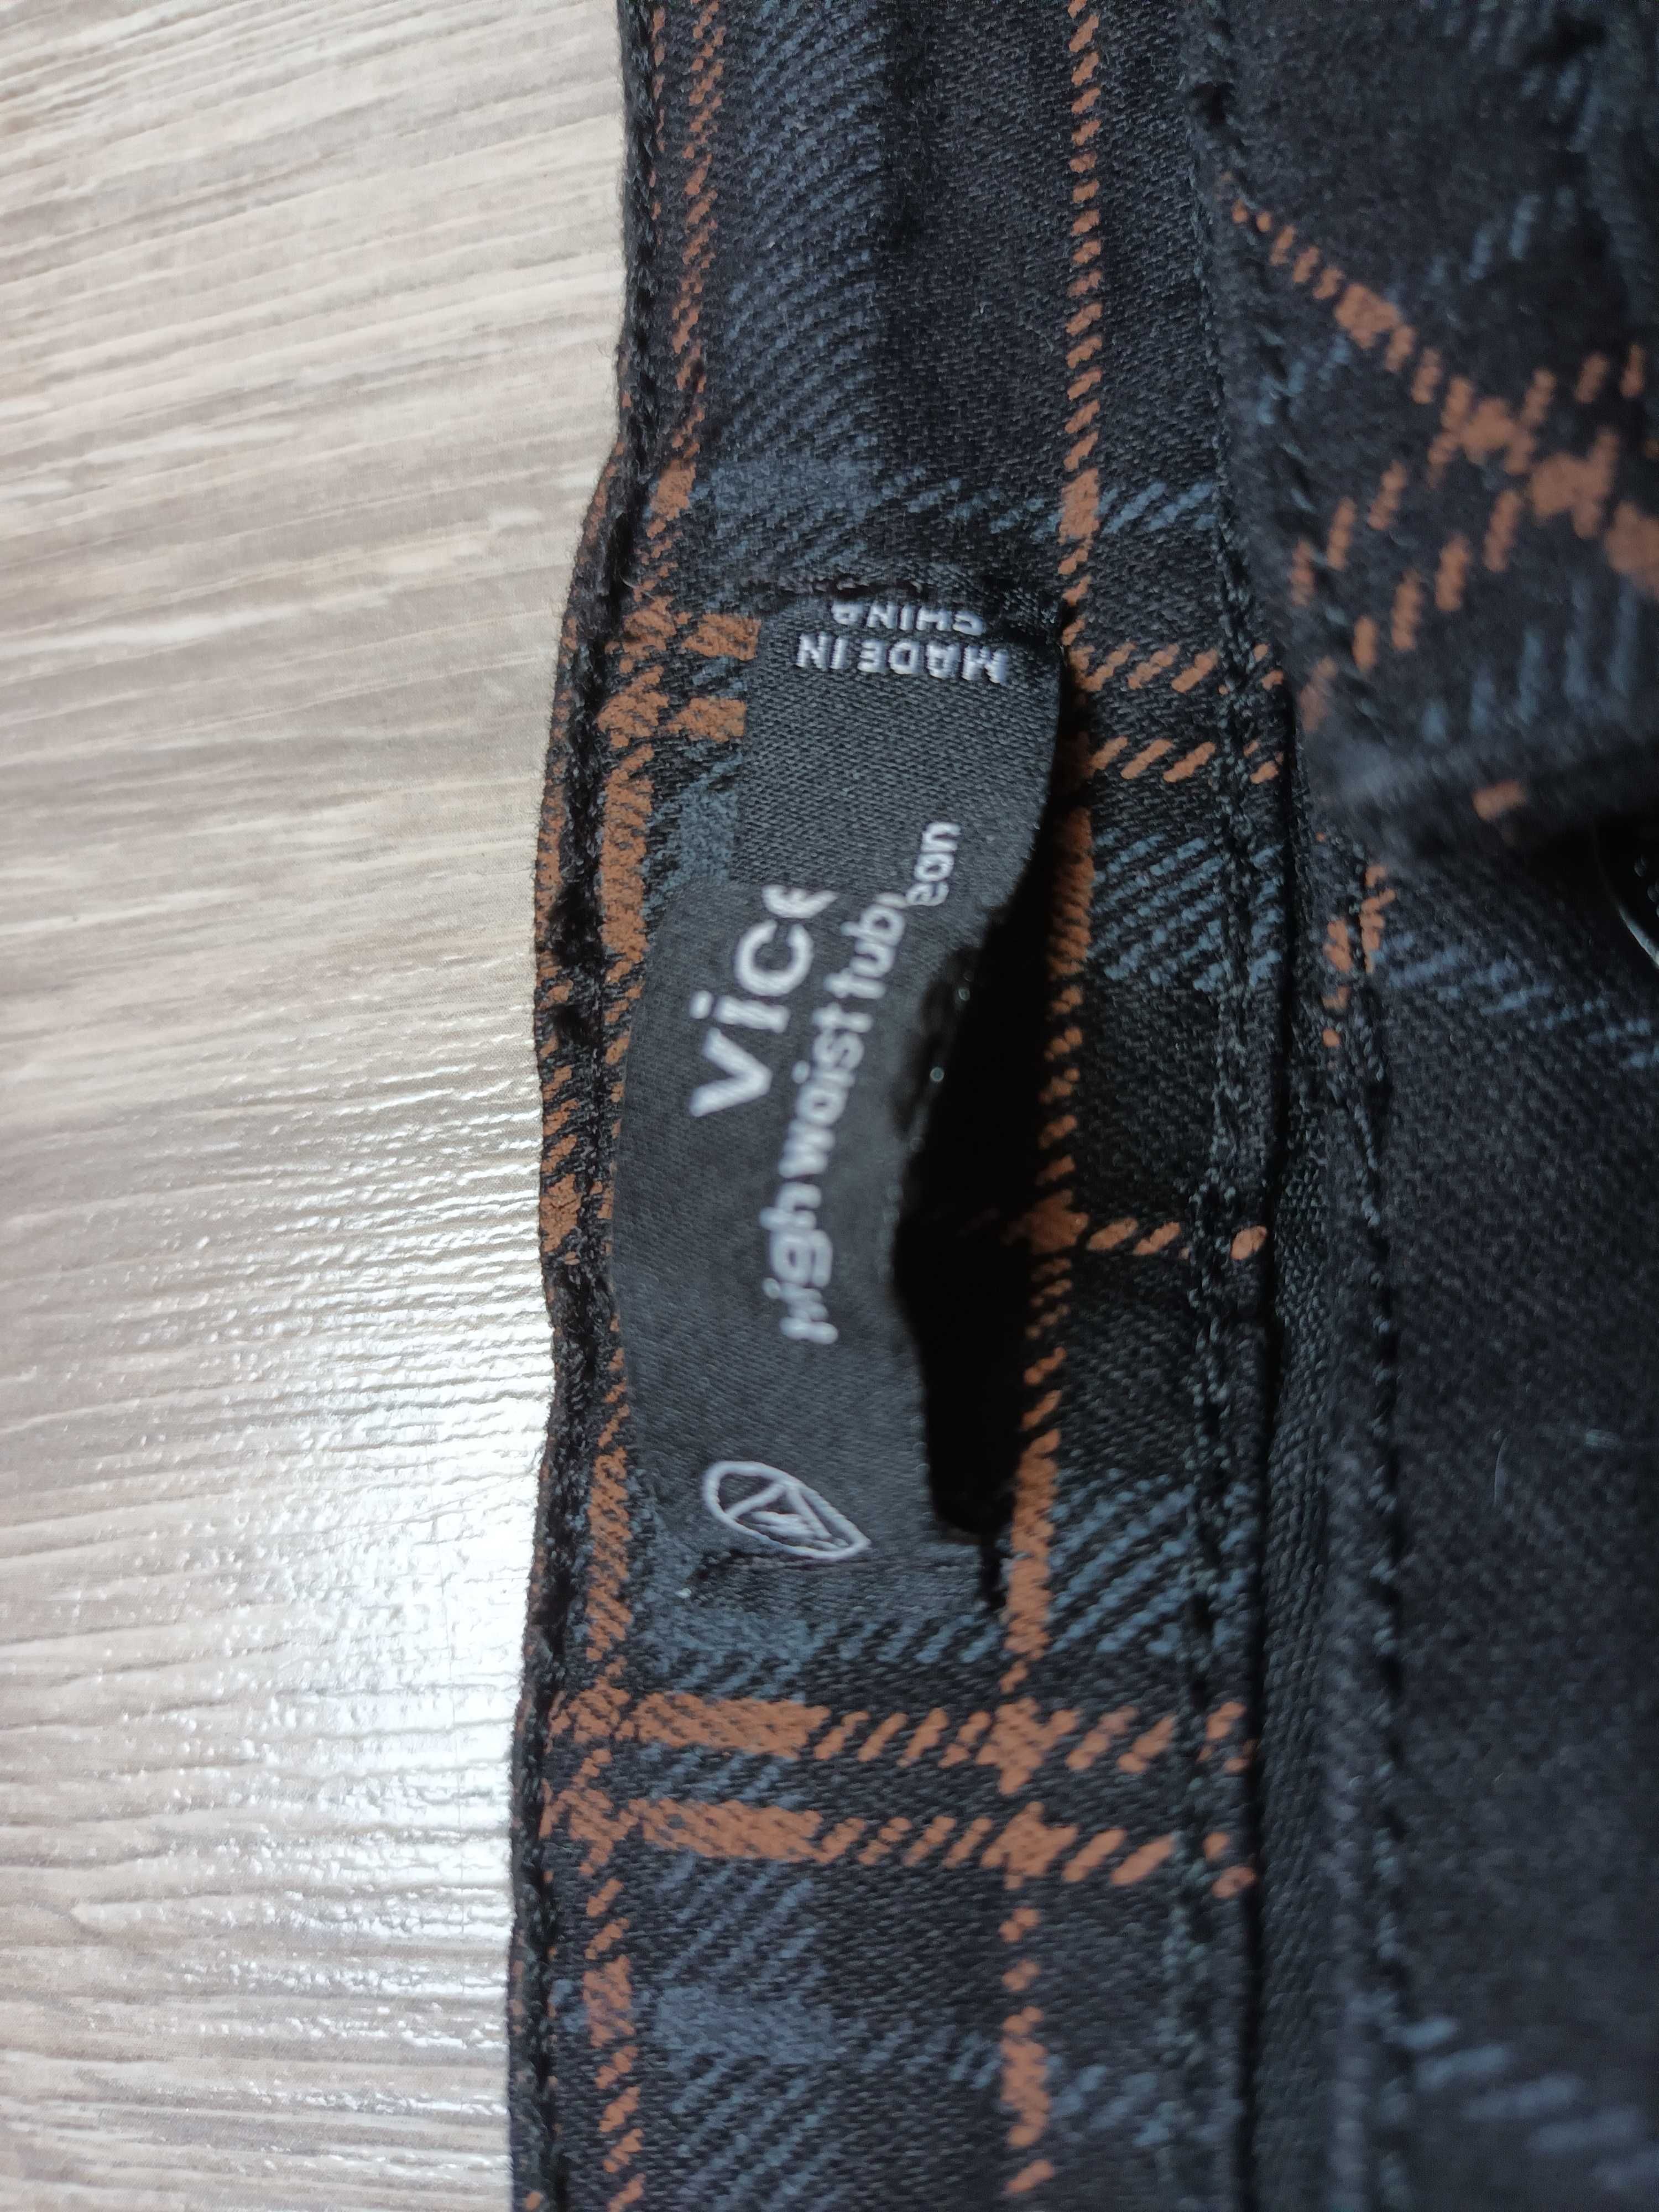 Spodnie jeansy kratka 42 XL Missguided nowe